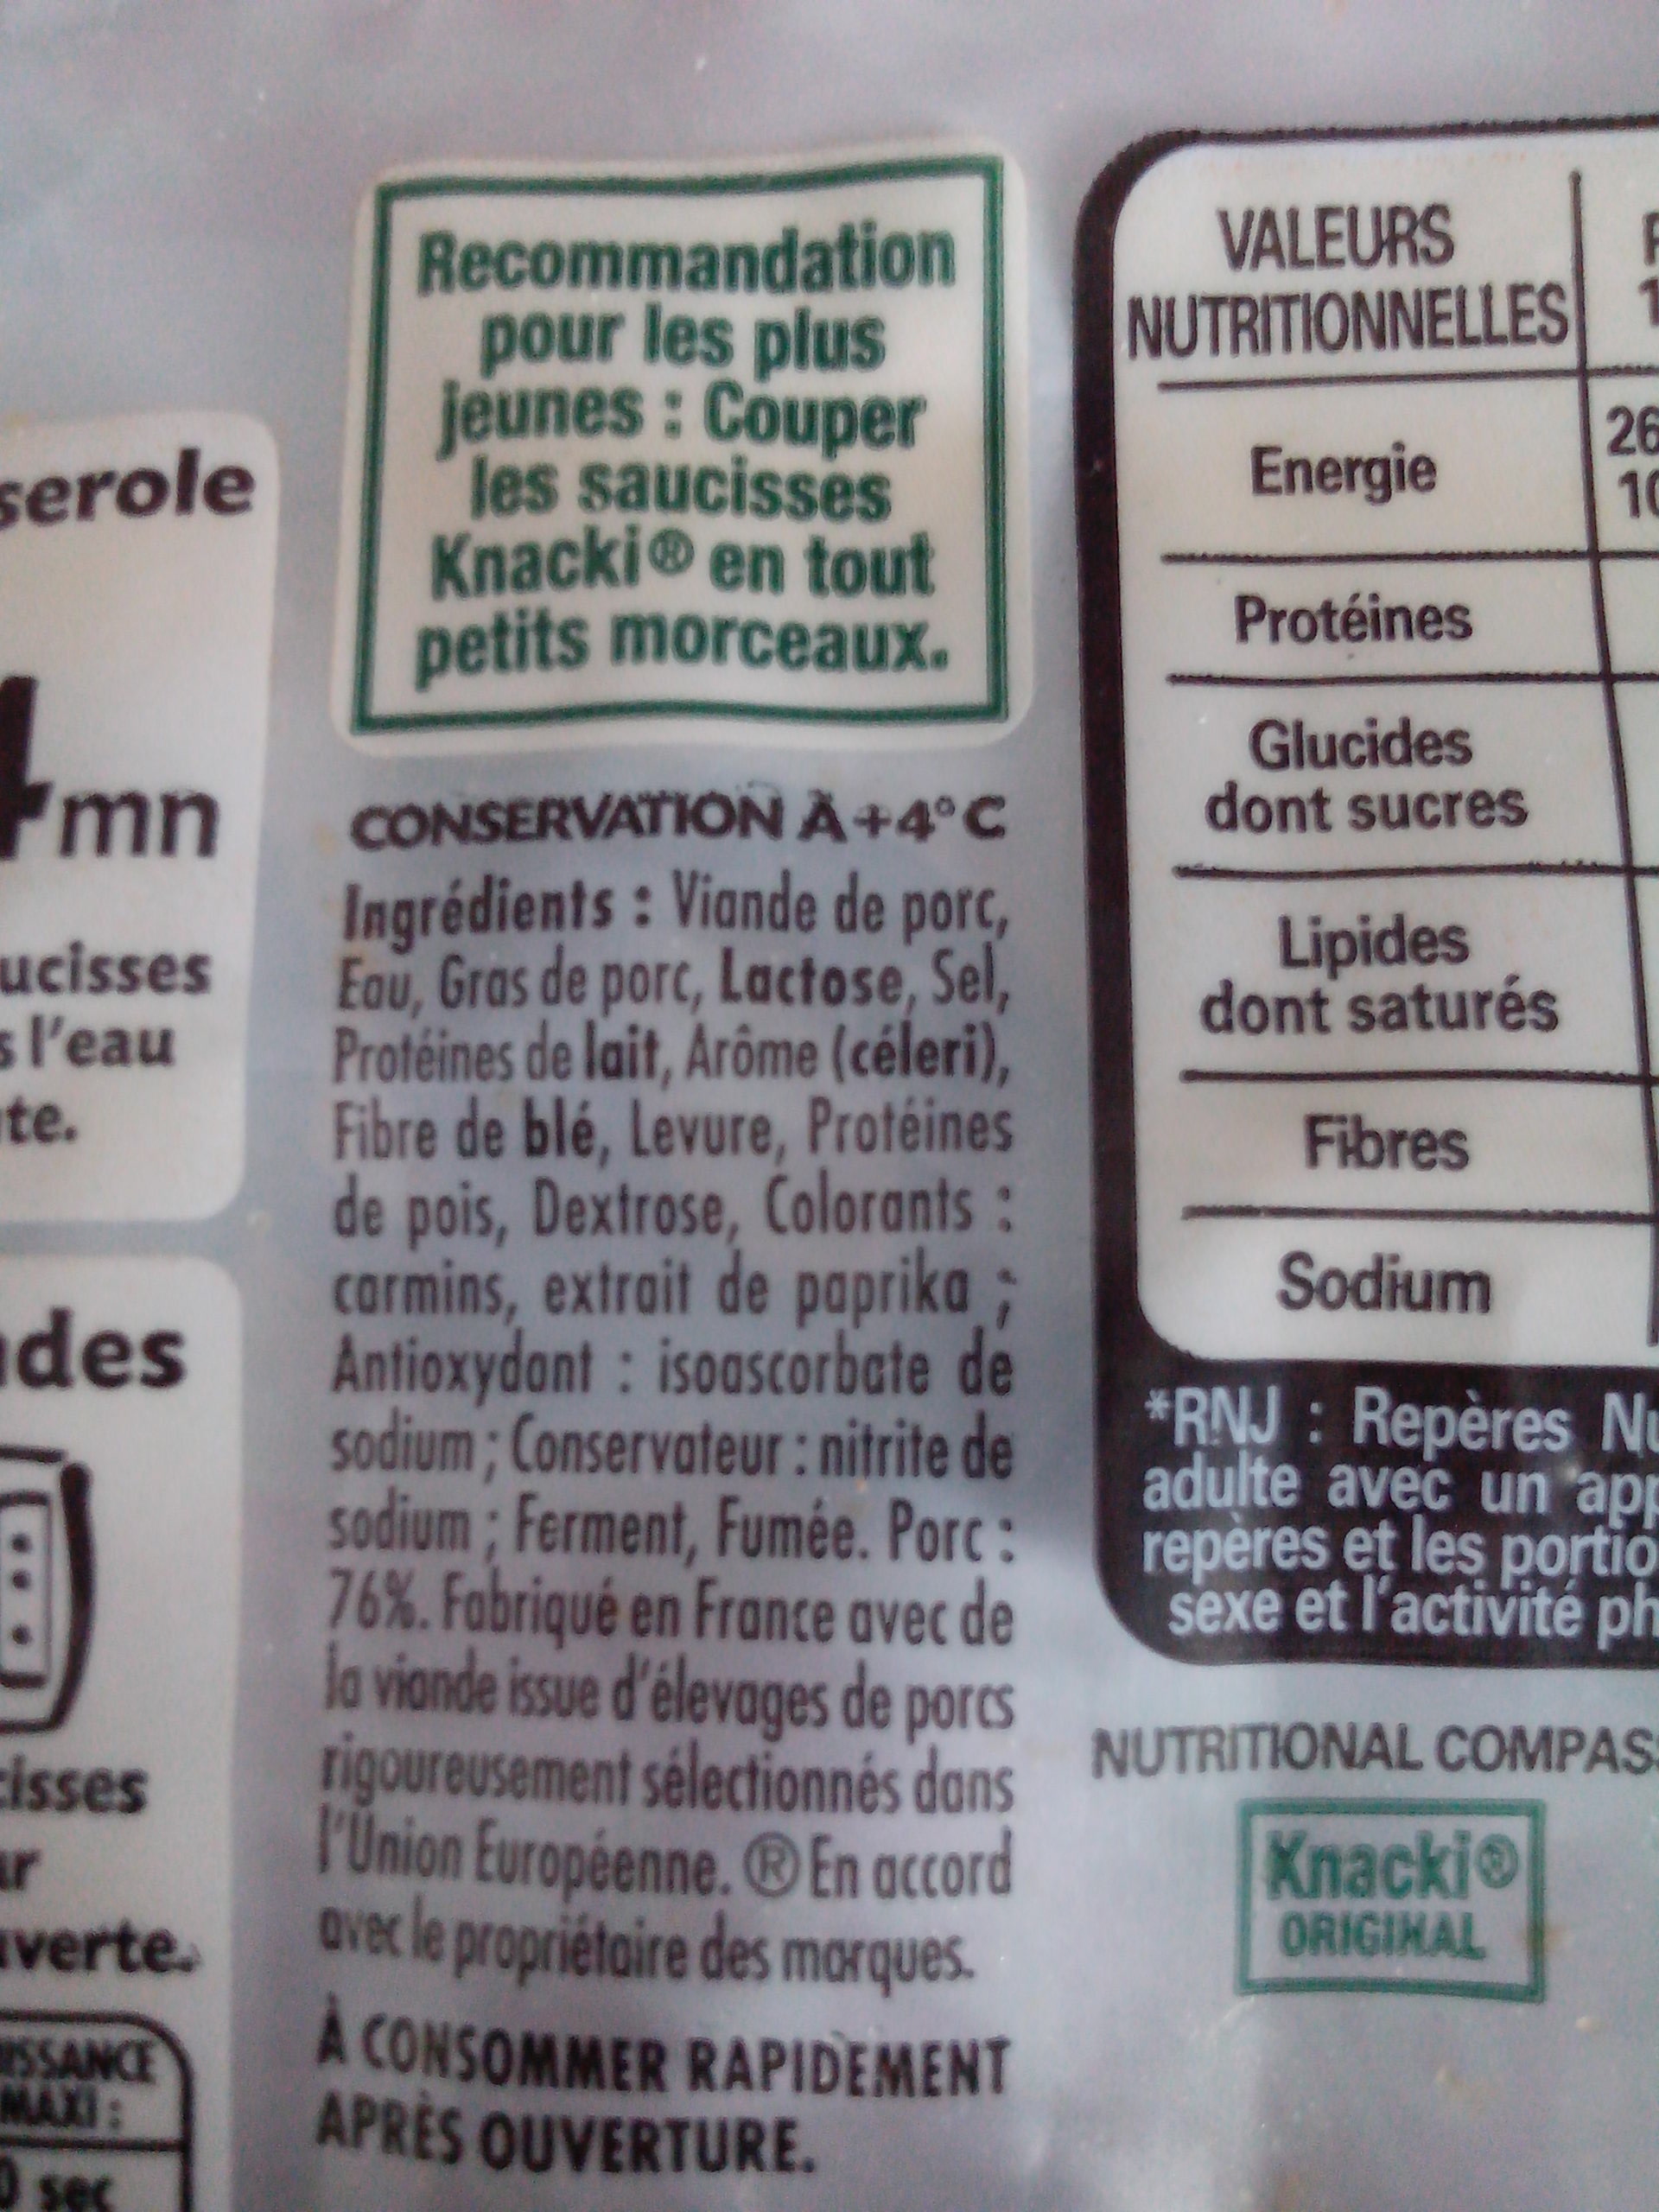 Knacki - 100% pur porc - Saucisses de Strasbourg - Ingredients - fr